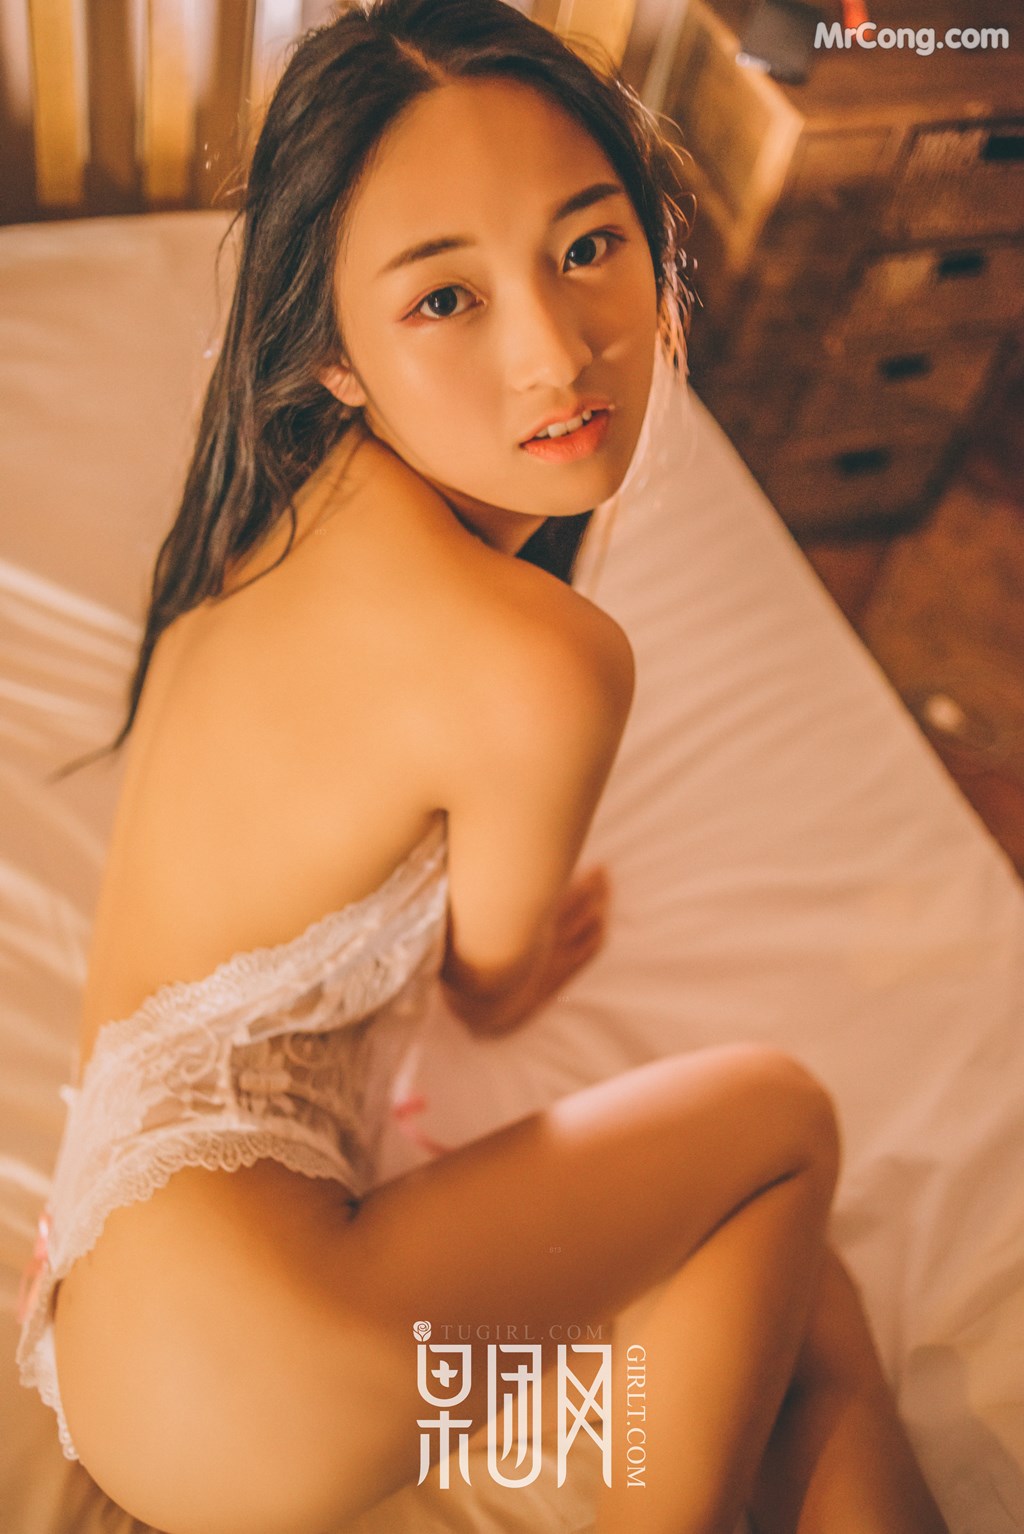 GIRLT No.086: Model Rou Rou (肉肉) (38 photos)